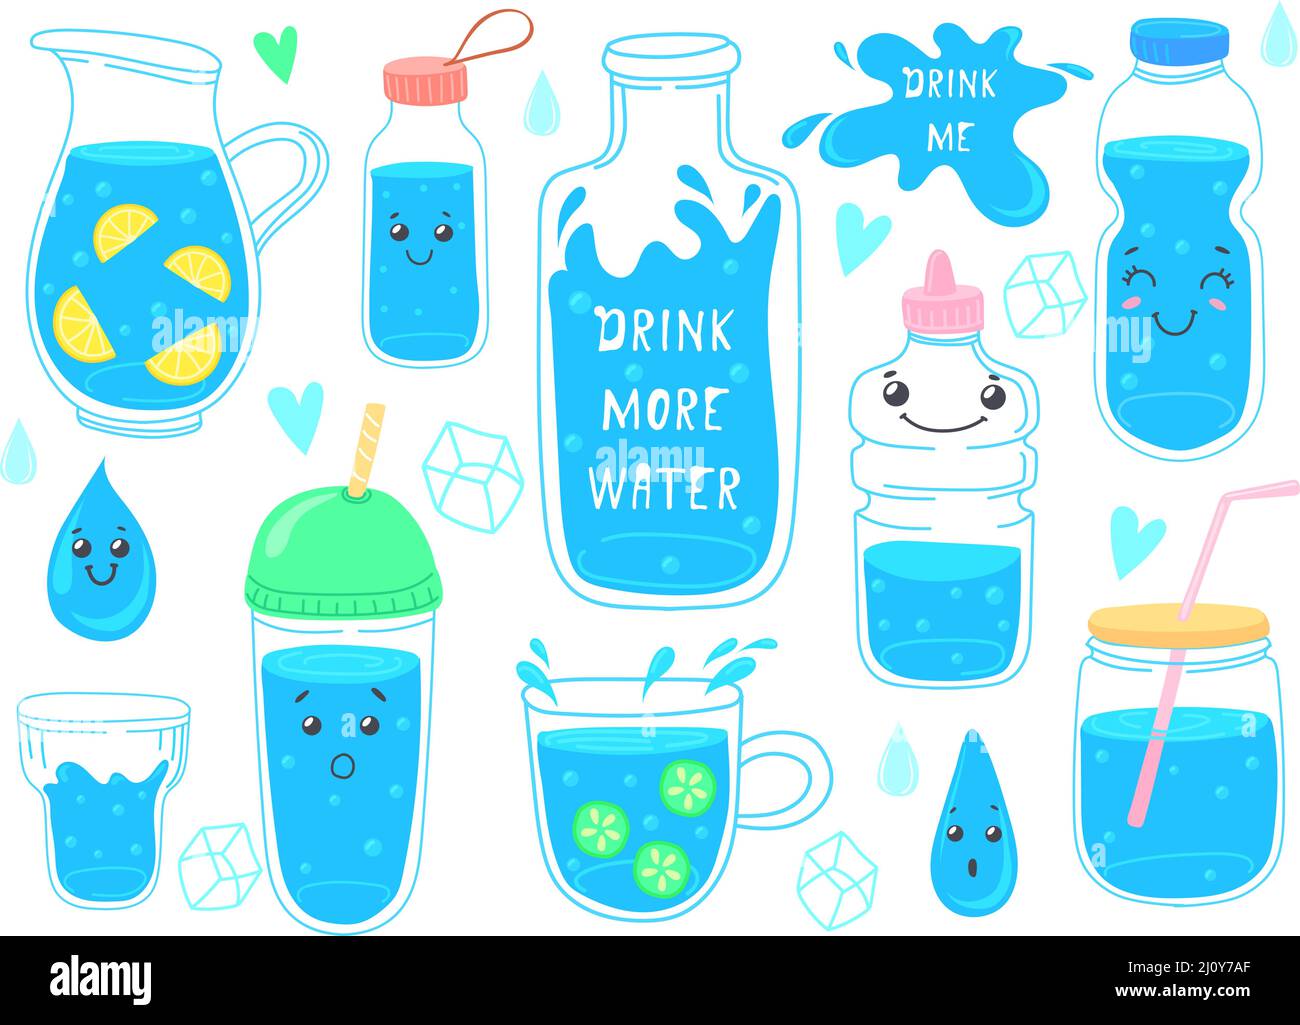 Trinken Sie mehr Wasser. Cute Waters Welt der Getränke Erde für die Gesundheit, Glasdekanter, Eisliter Getränke, lustige Aufkleber Poster, Fitness-Diät, doodle Cartoon ordentlich Vektor Illustration. Behälter H2O Flasche Stock Vektor